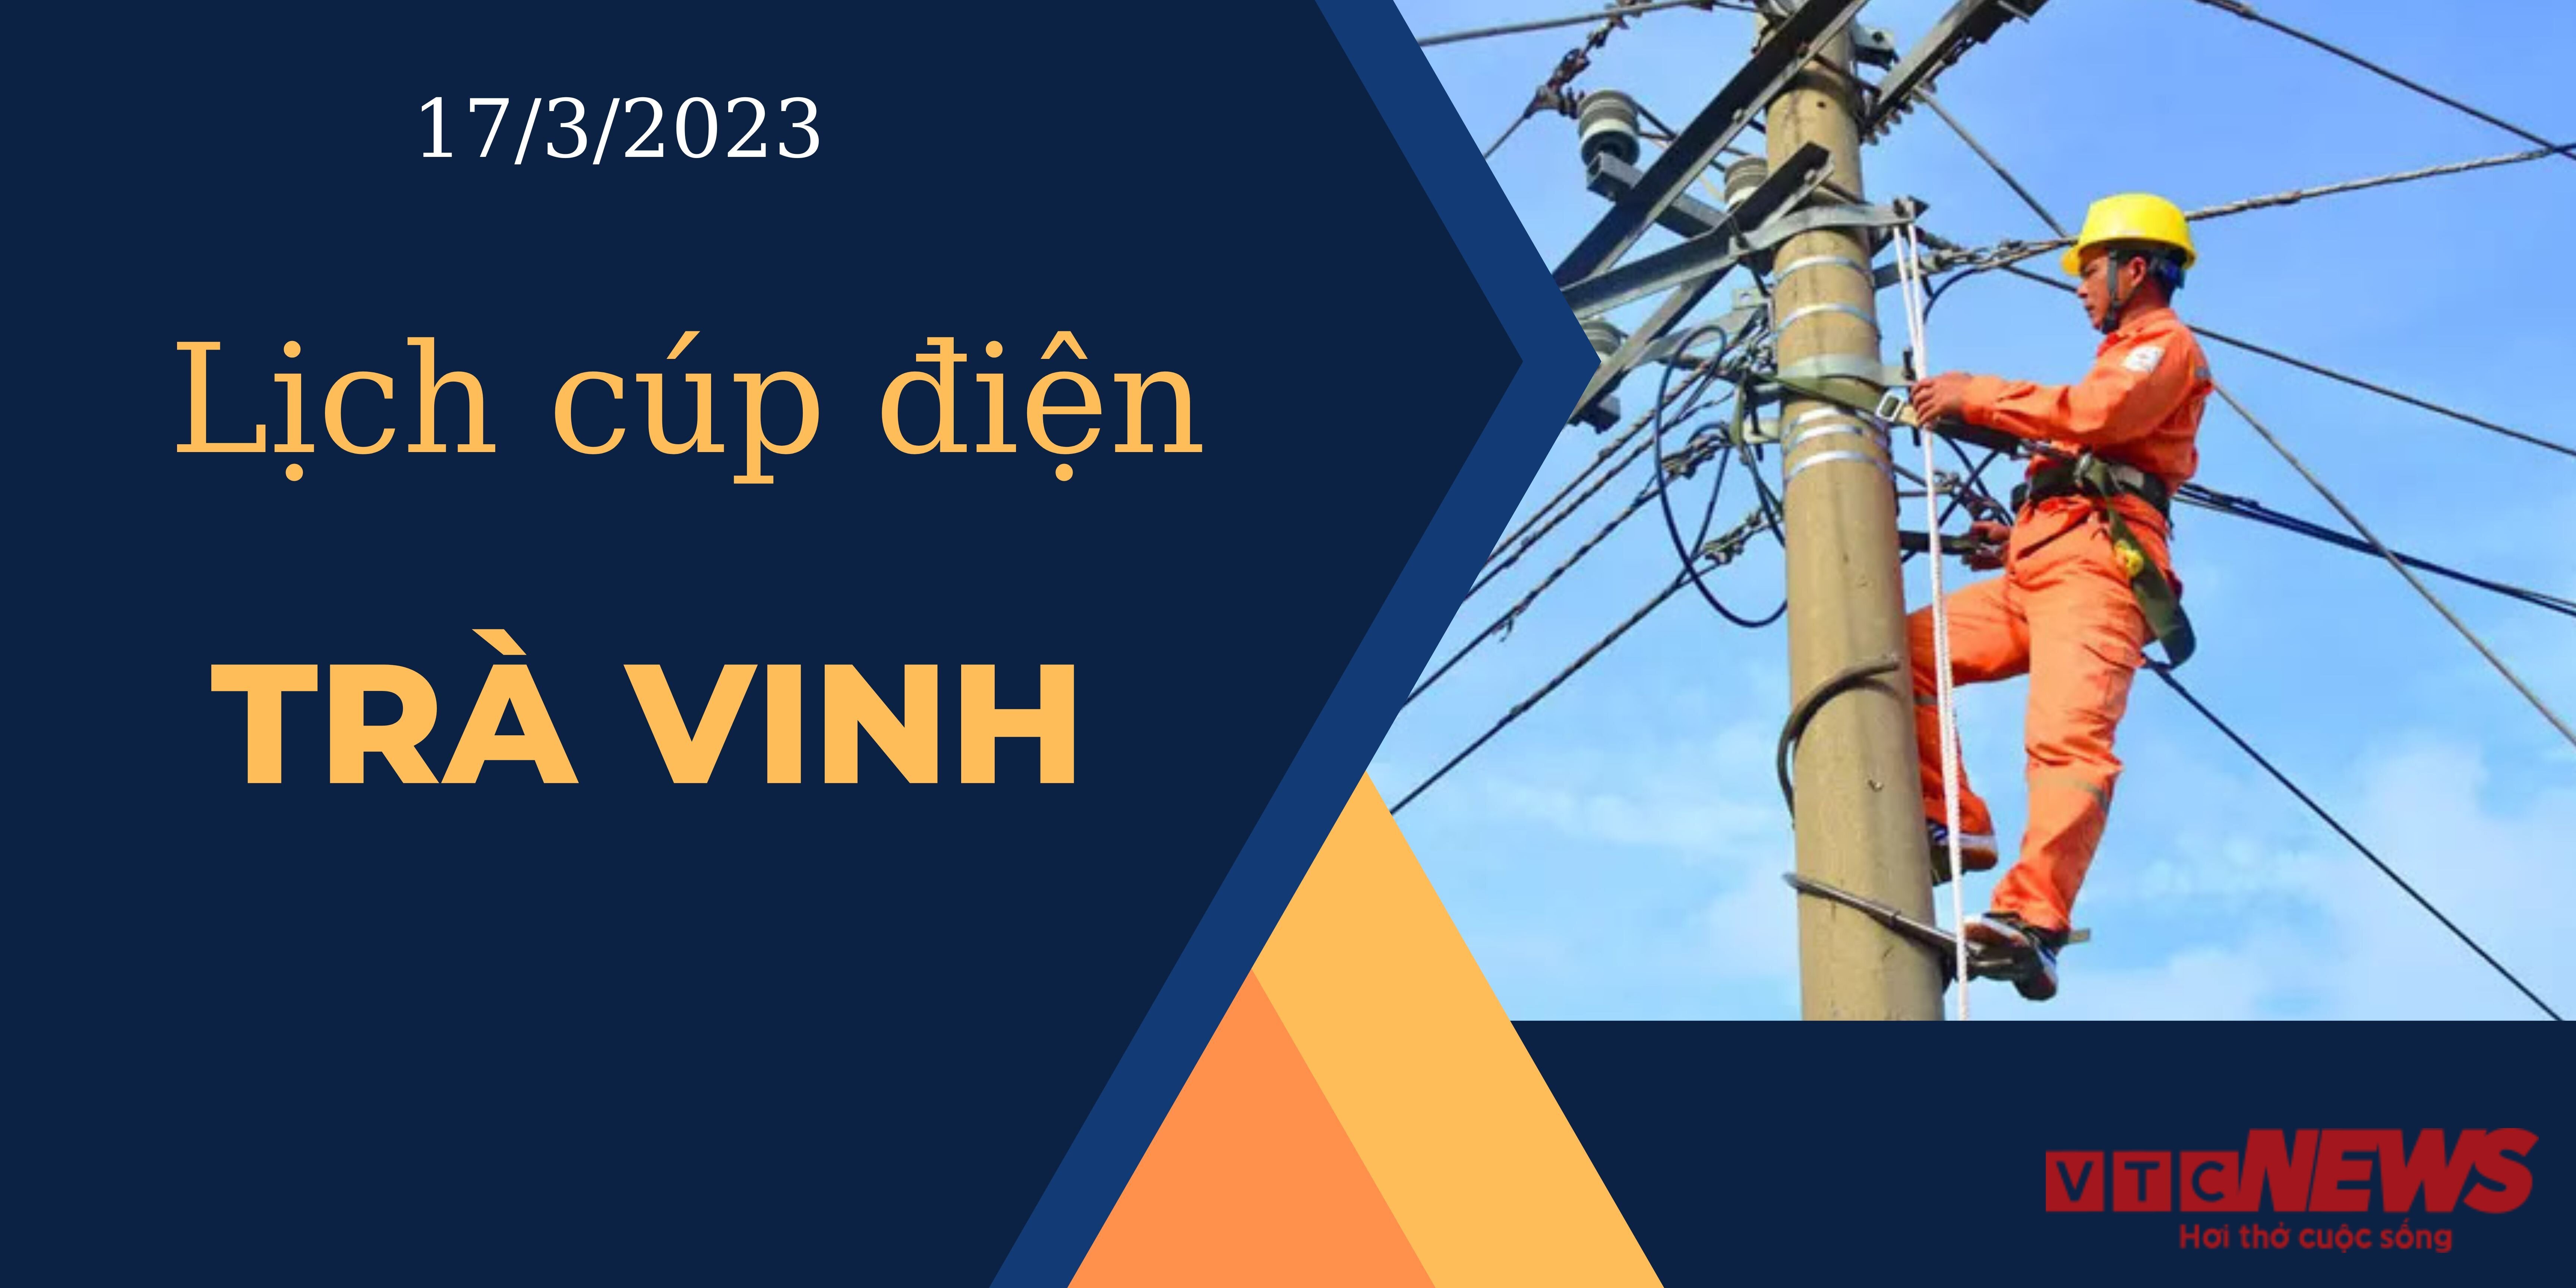 Lịch cúp điện hôm nay ngày 17/3/2023 tại Trà Vinh  - 1